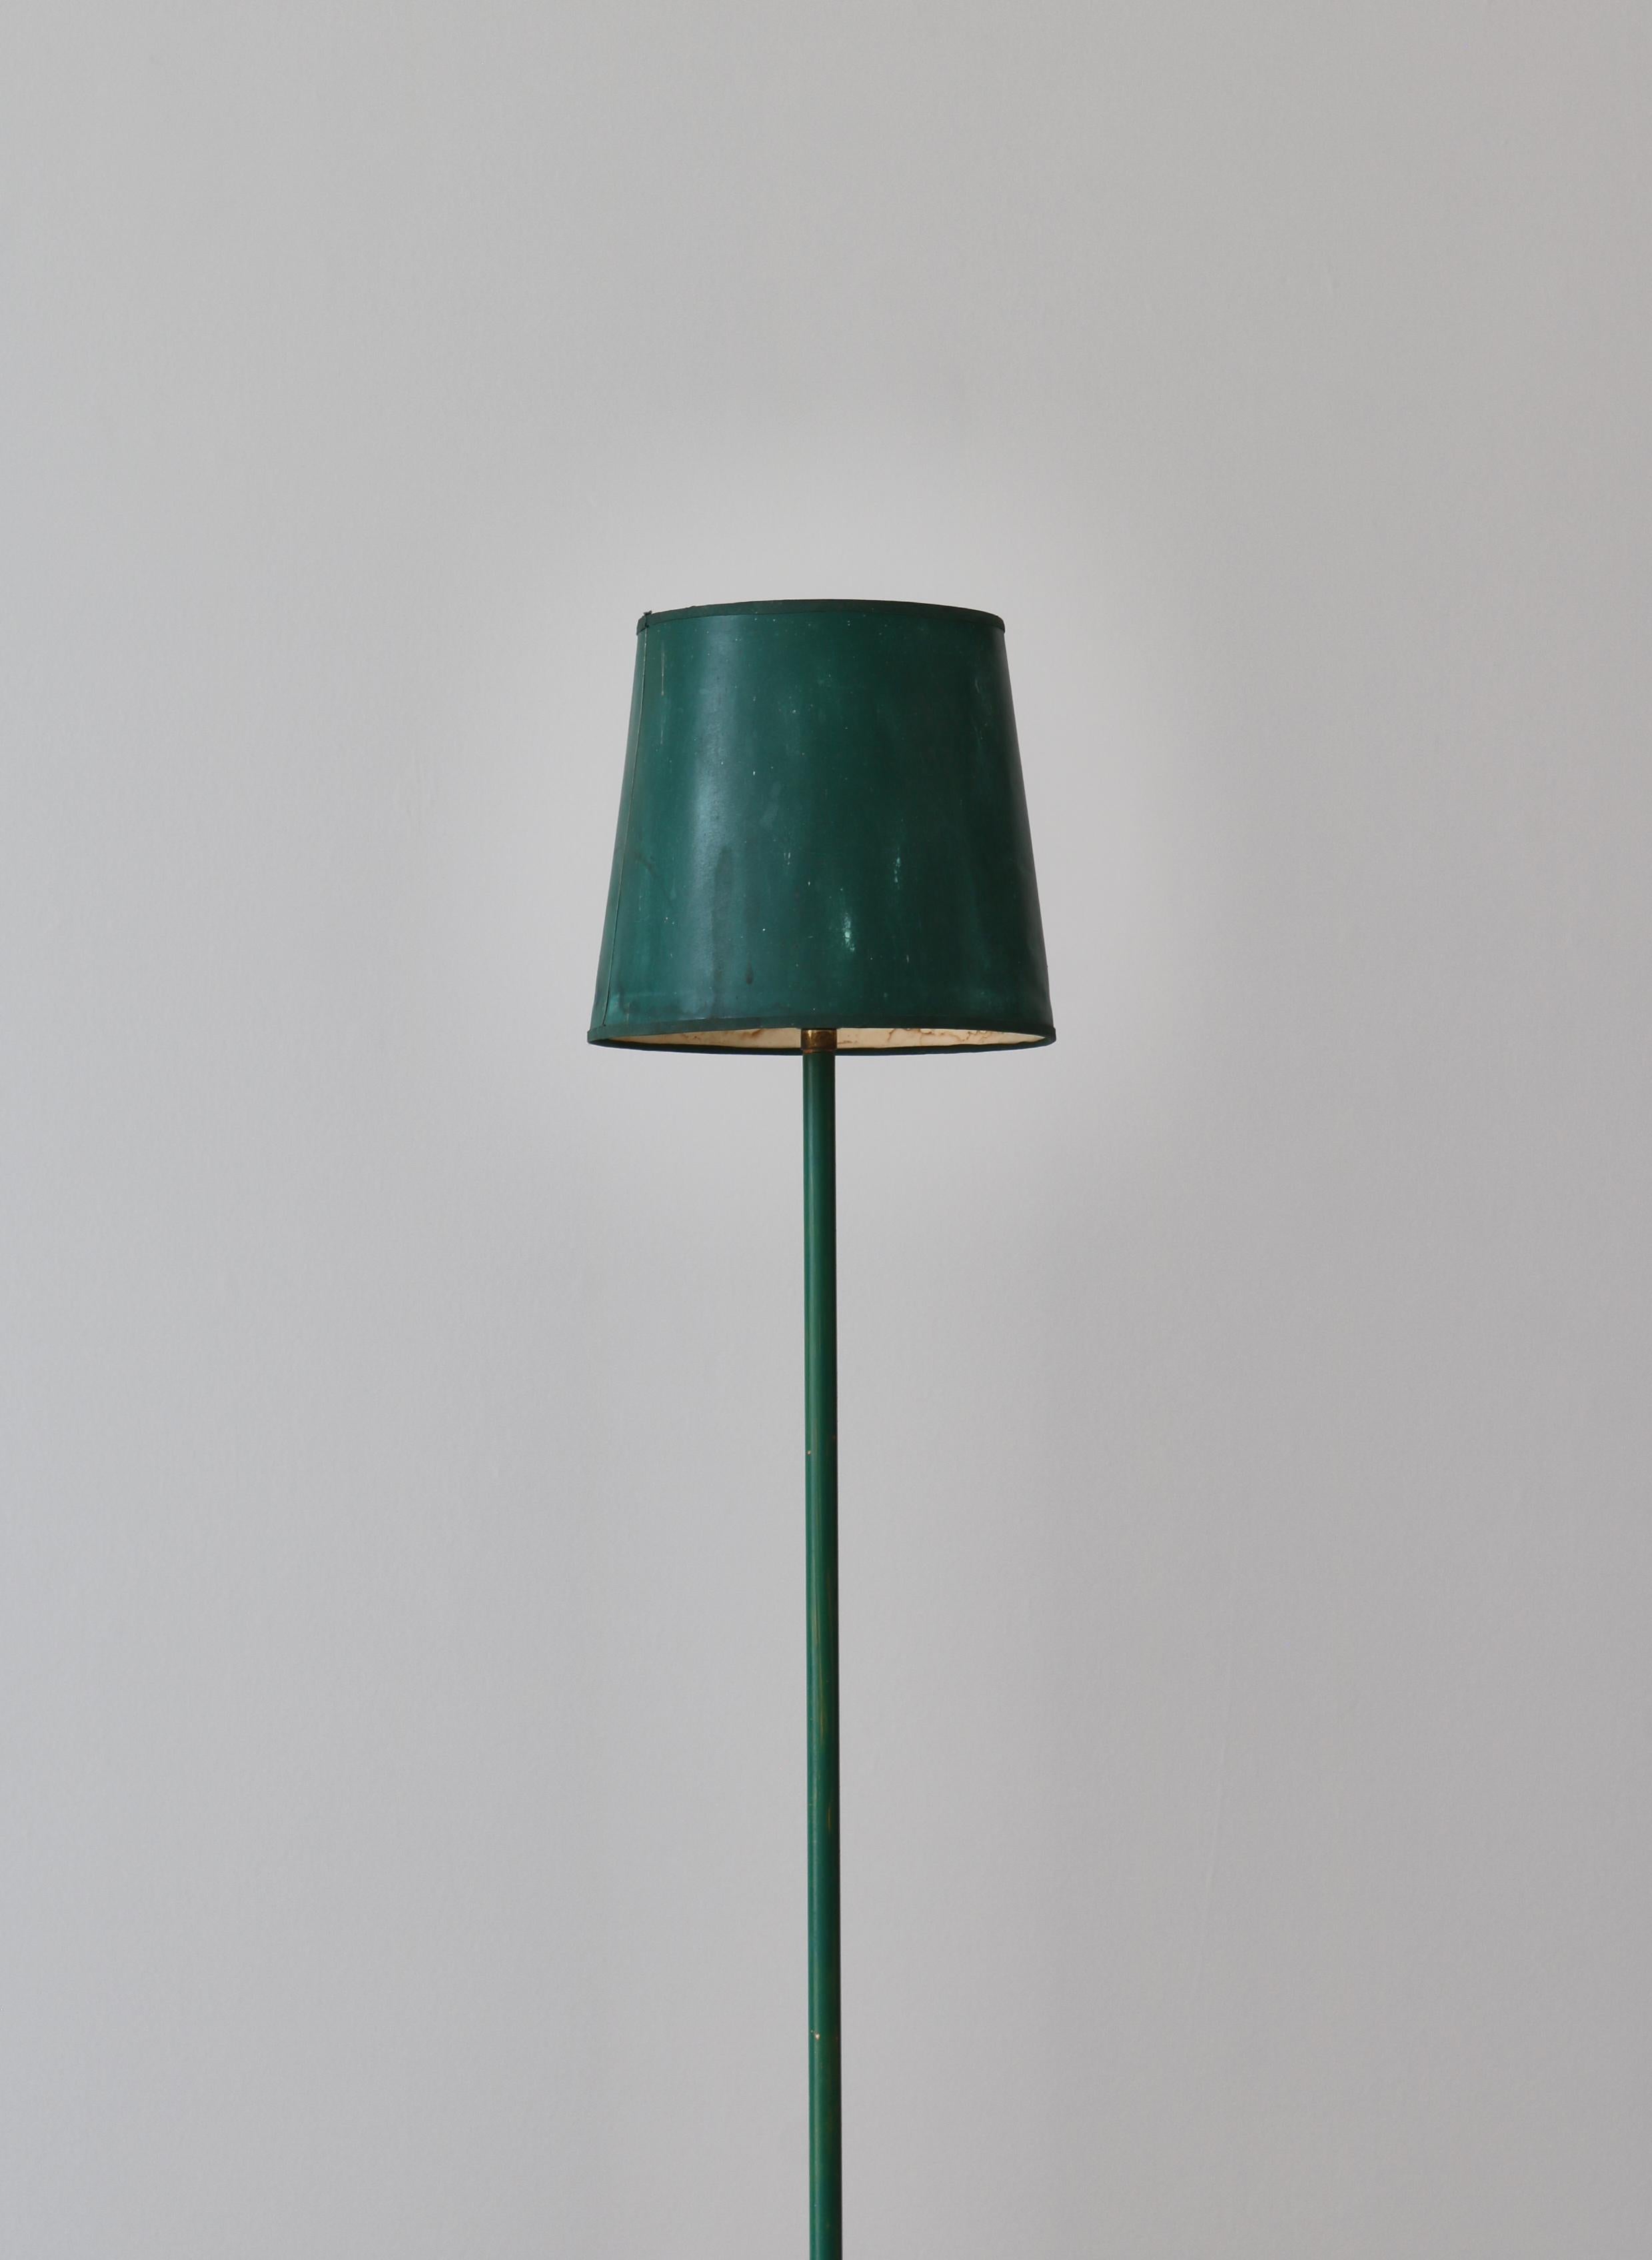 Danish Scandinavian Modern Floor Lamp Green Lacquered Metal, 1940s For Sale